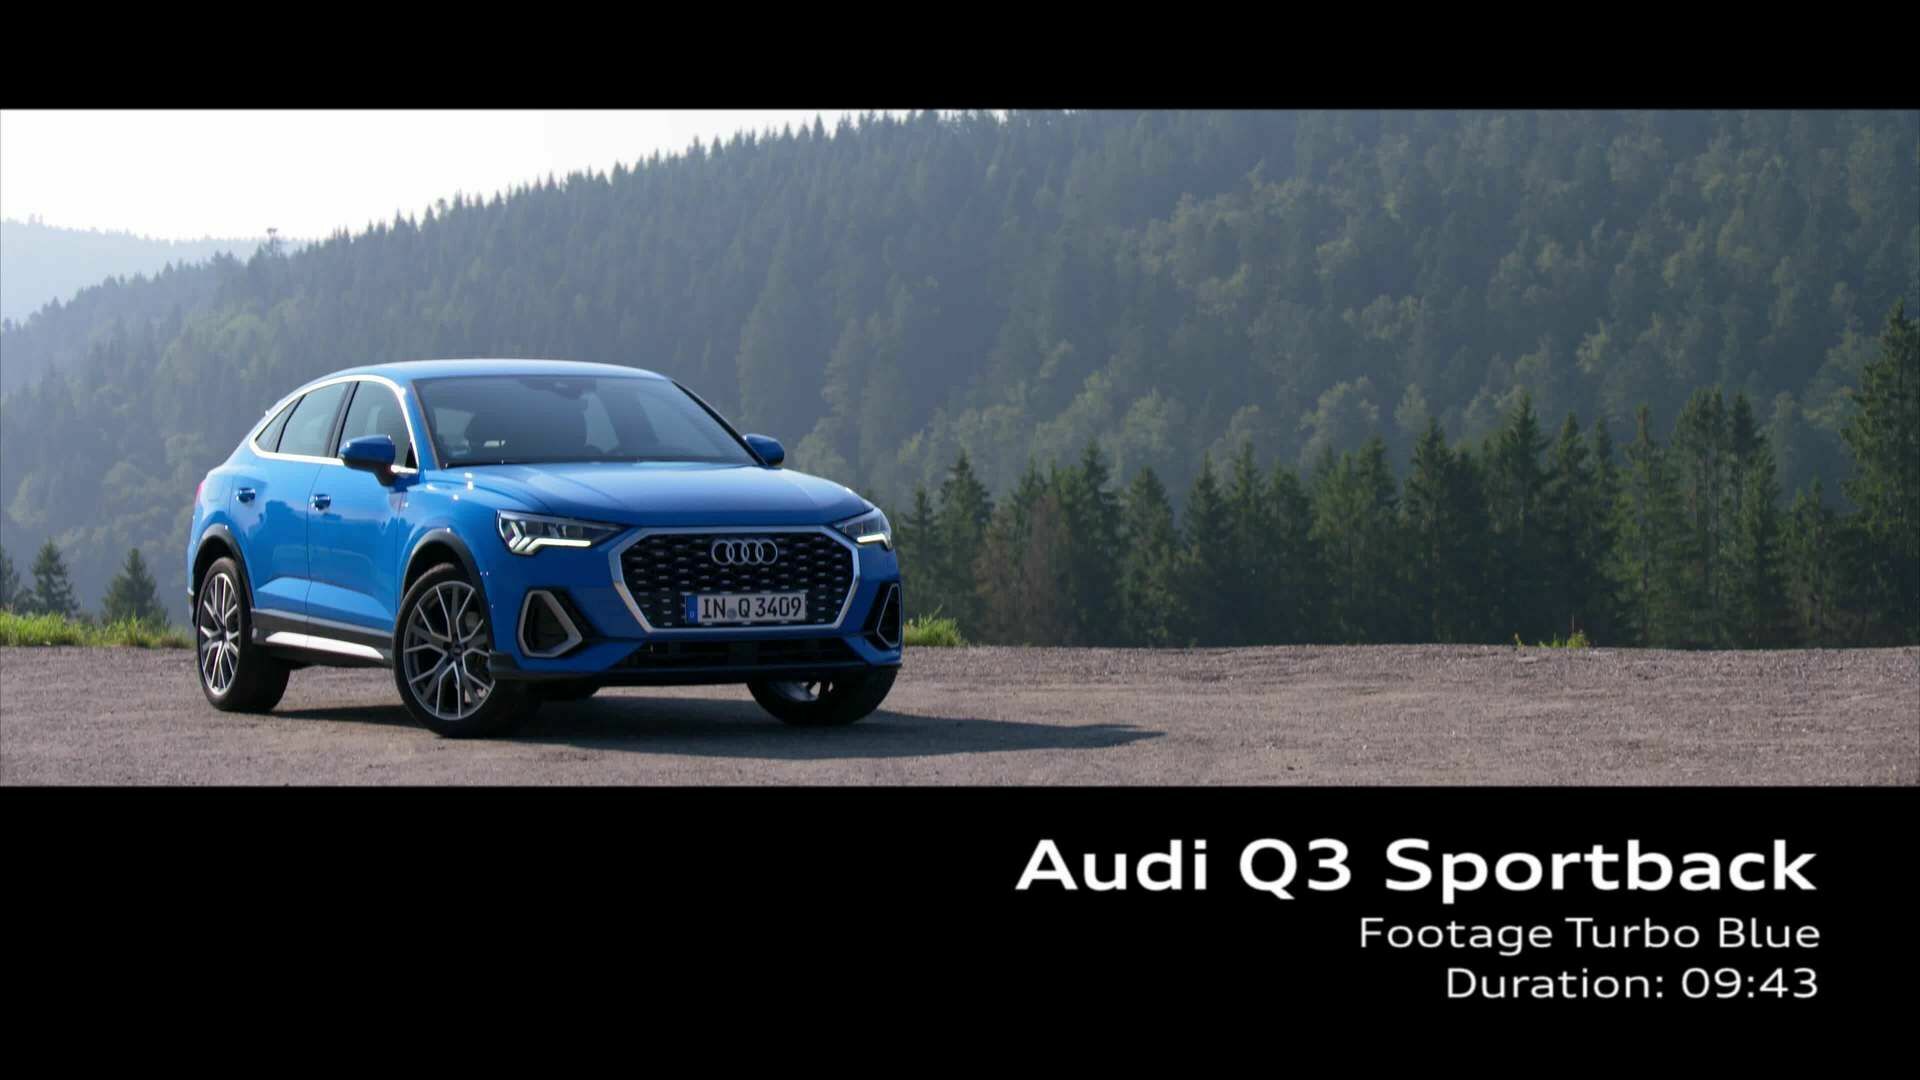 Audi Q3 Sportback Turbo Blue (Footage)